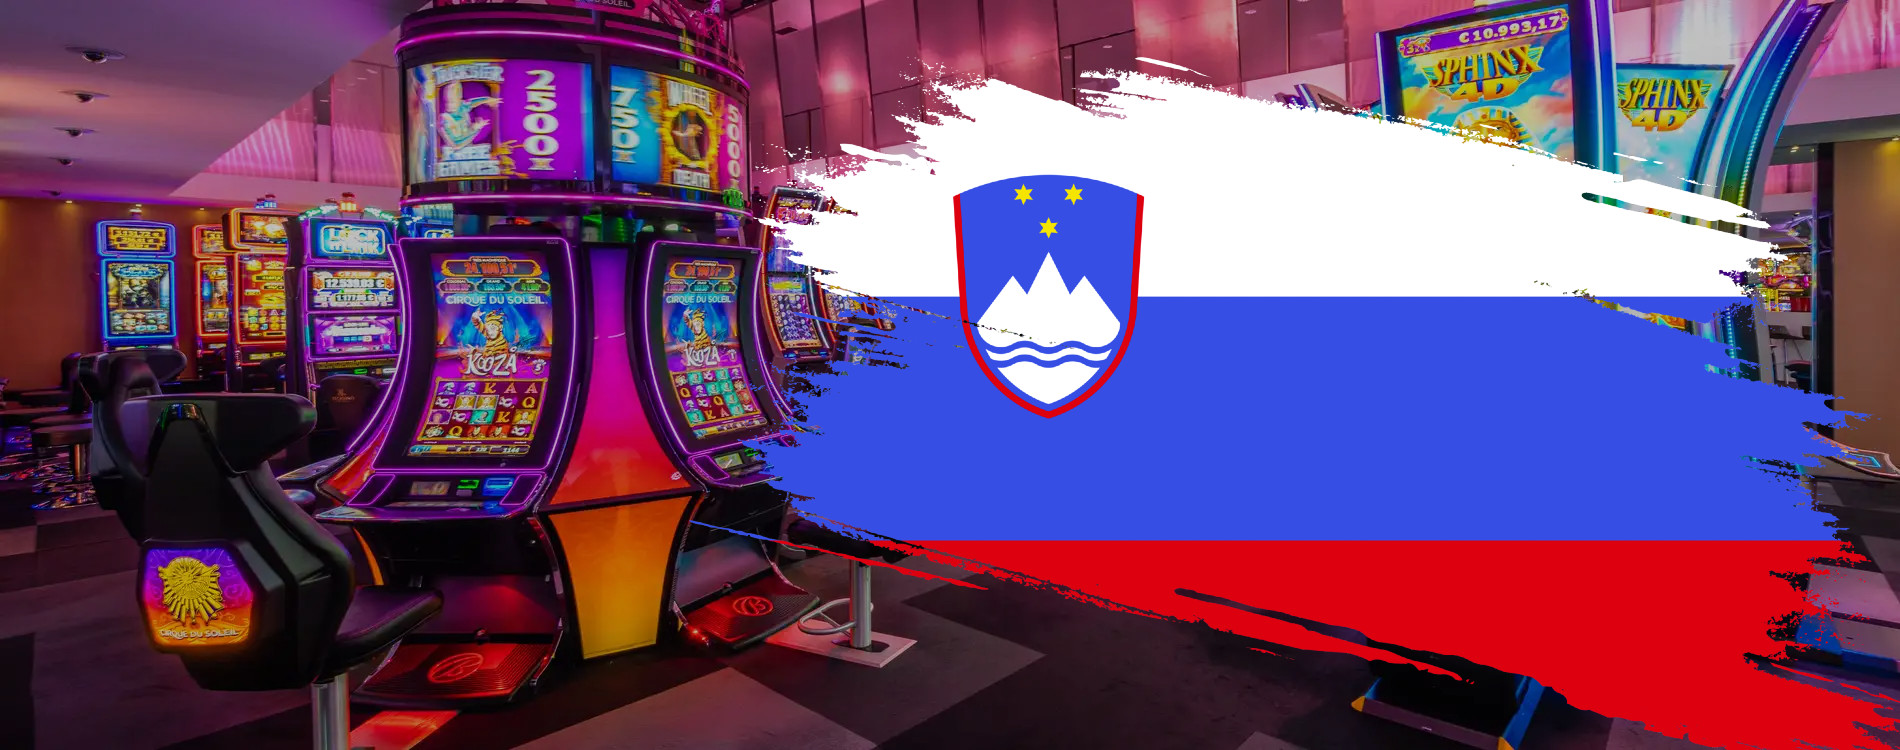 Primerjava Tujih Igralnic v Sloveniji in Licenčnih Spletnih Igralnic 